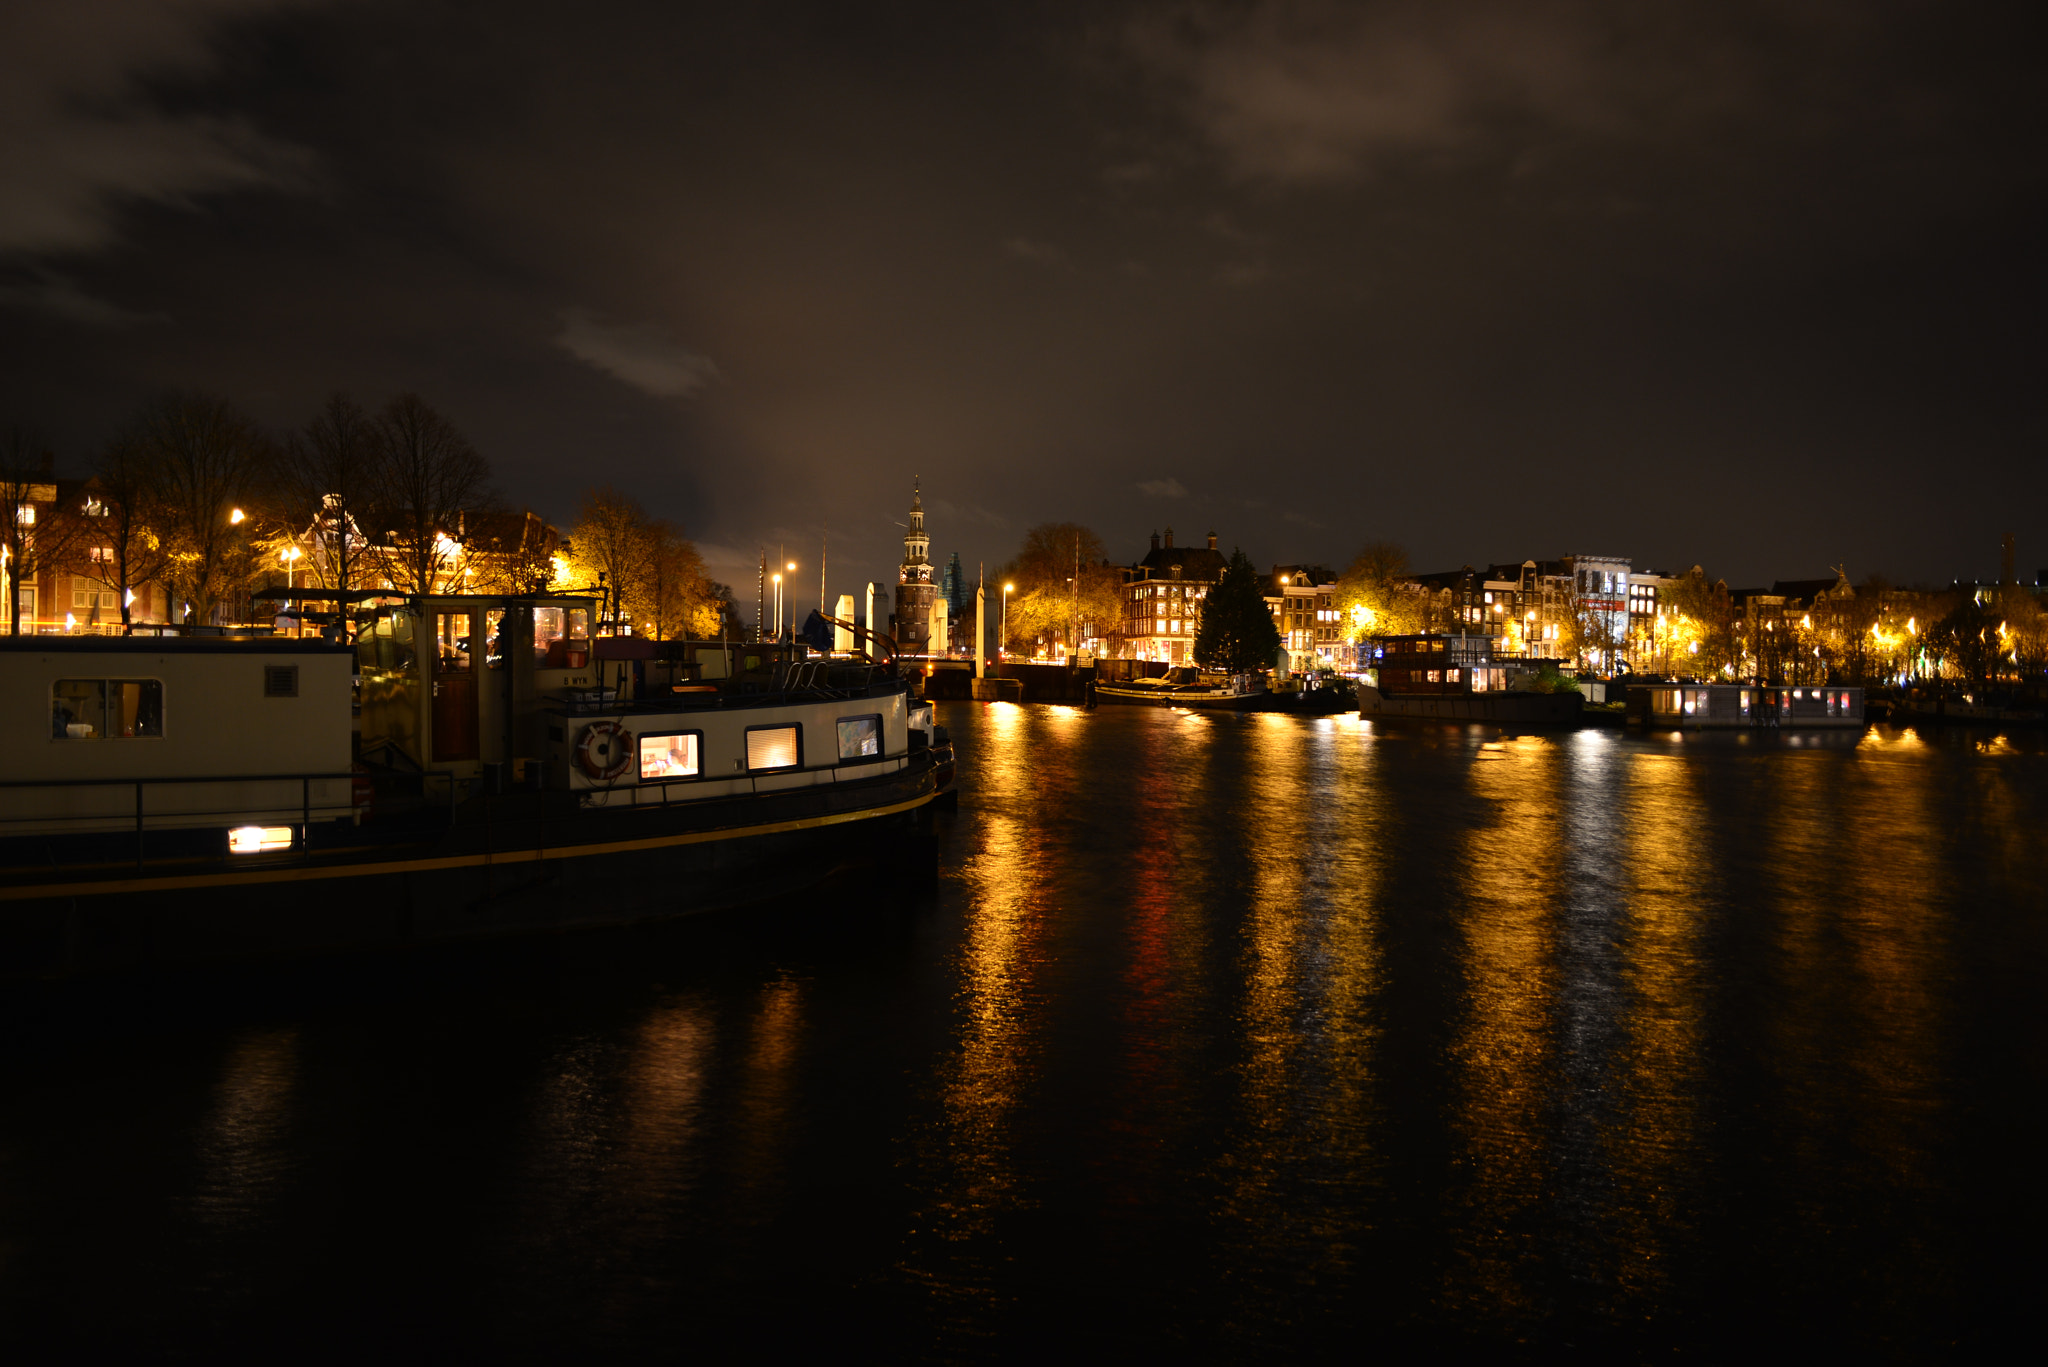 Nikon AF Nikkor 24mm F2.8D sample photo. Living at boat in amsterdam photography